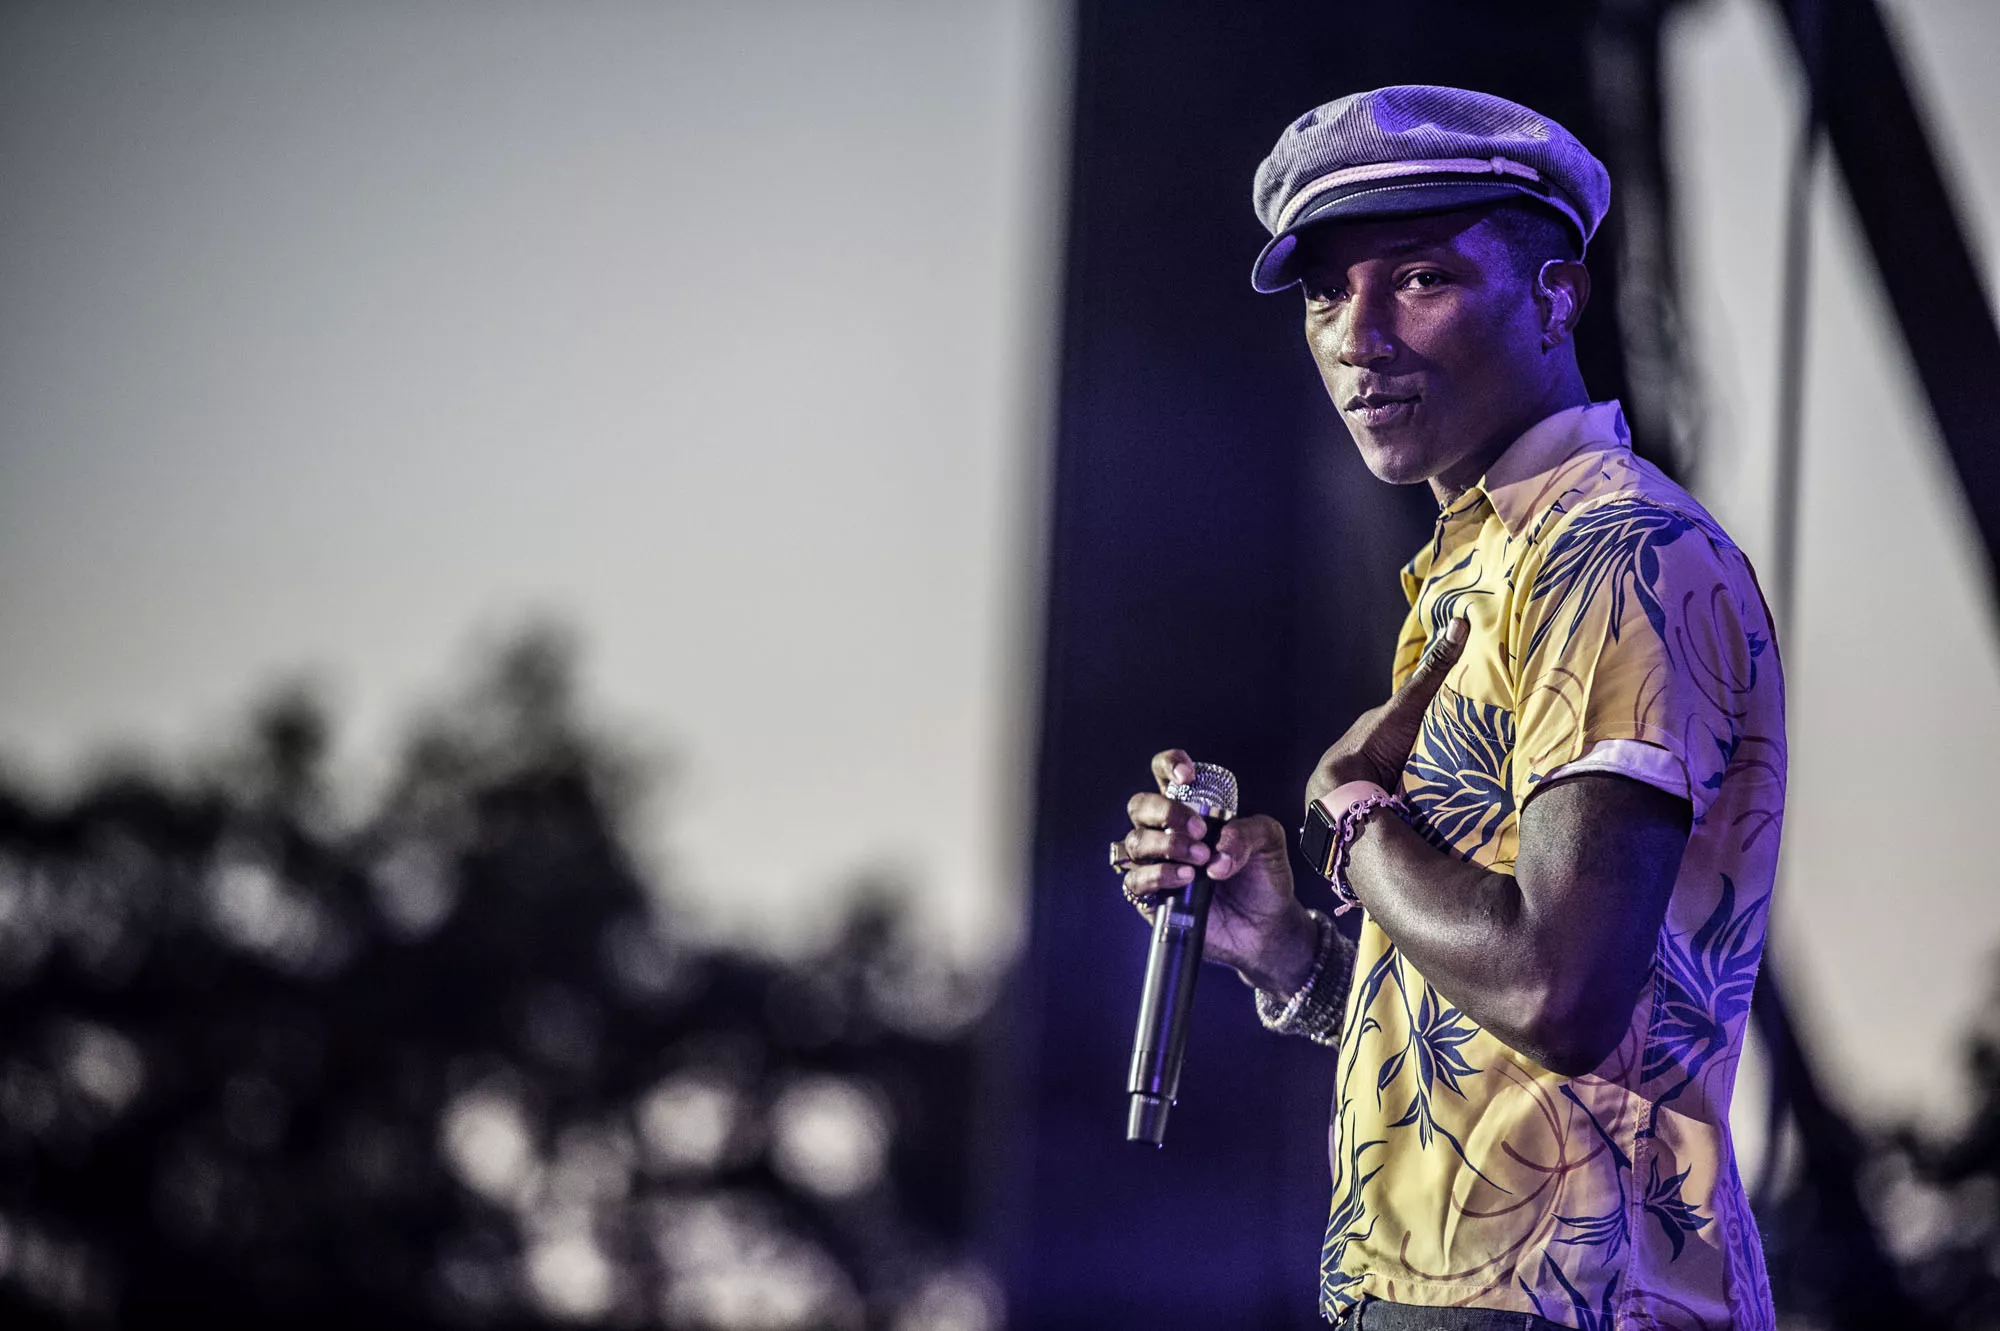 Pharrell udgiver ny blues-inspireret sang til filmen ”Hidden Figures”